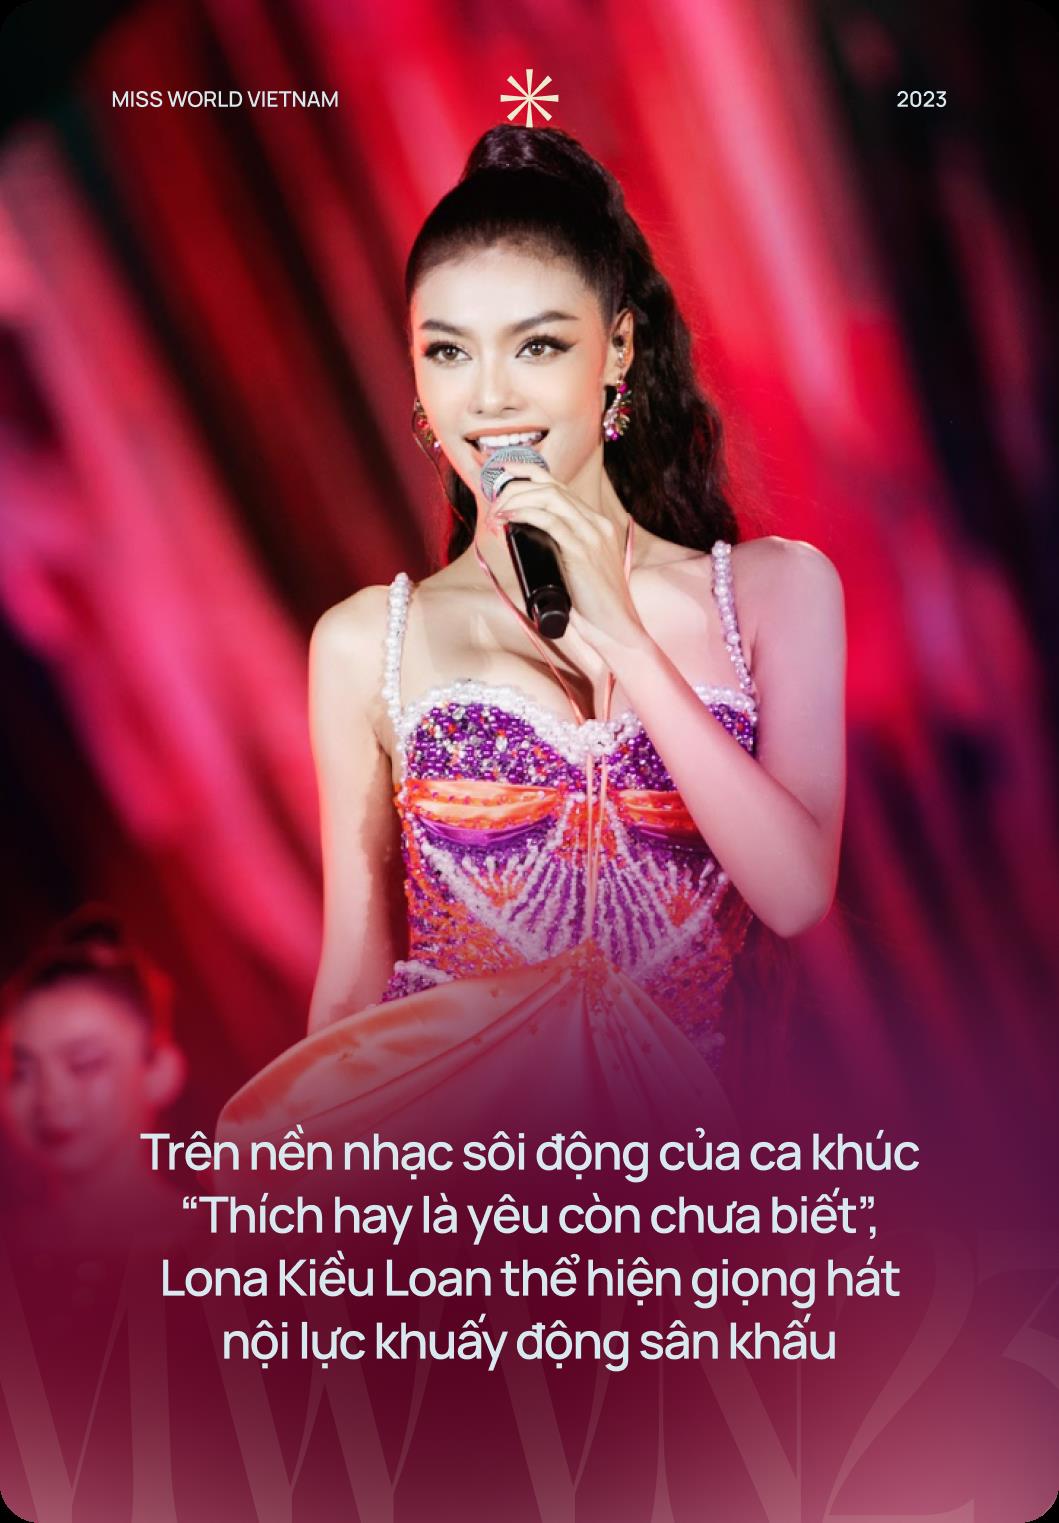 Mãn nhãn với Chung kết Miss World Vietnam 2023: Lona khuấy động với bản hit đình đám, Đông Nhi đem tới ca khúc đầy cảm xúc - Ảnh 5.